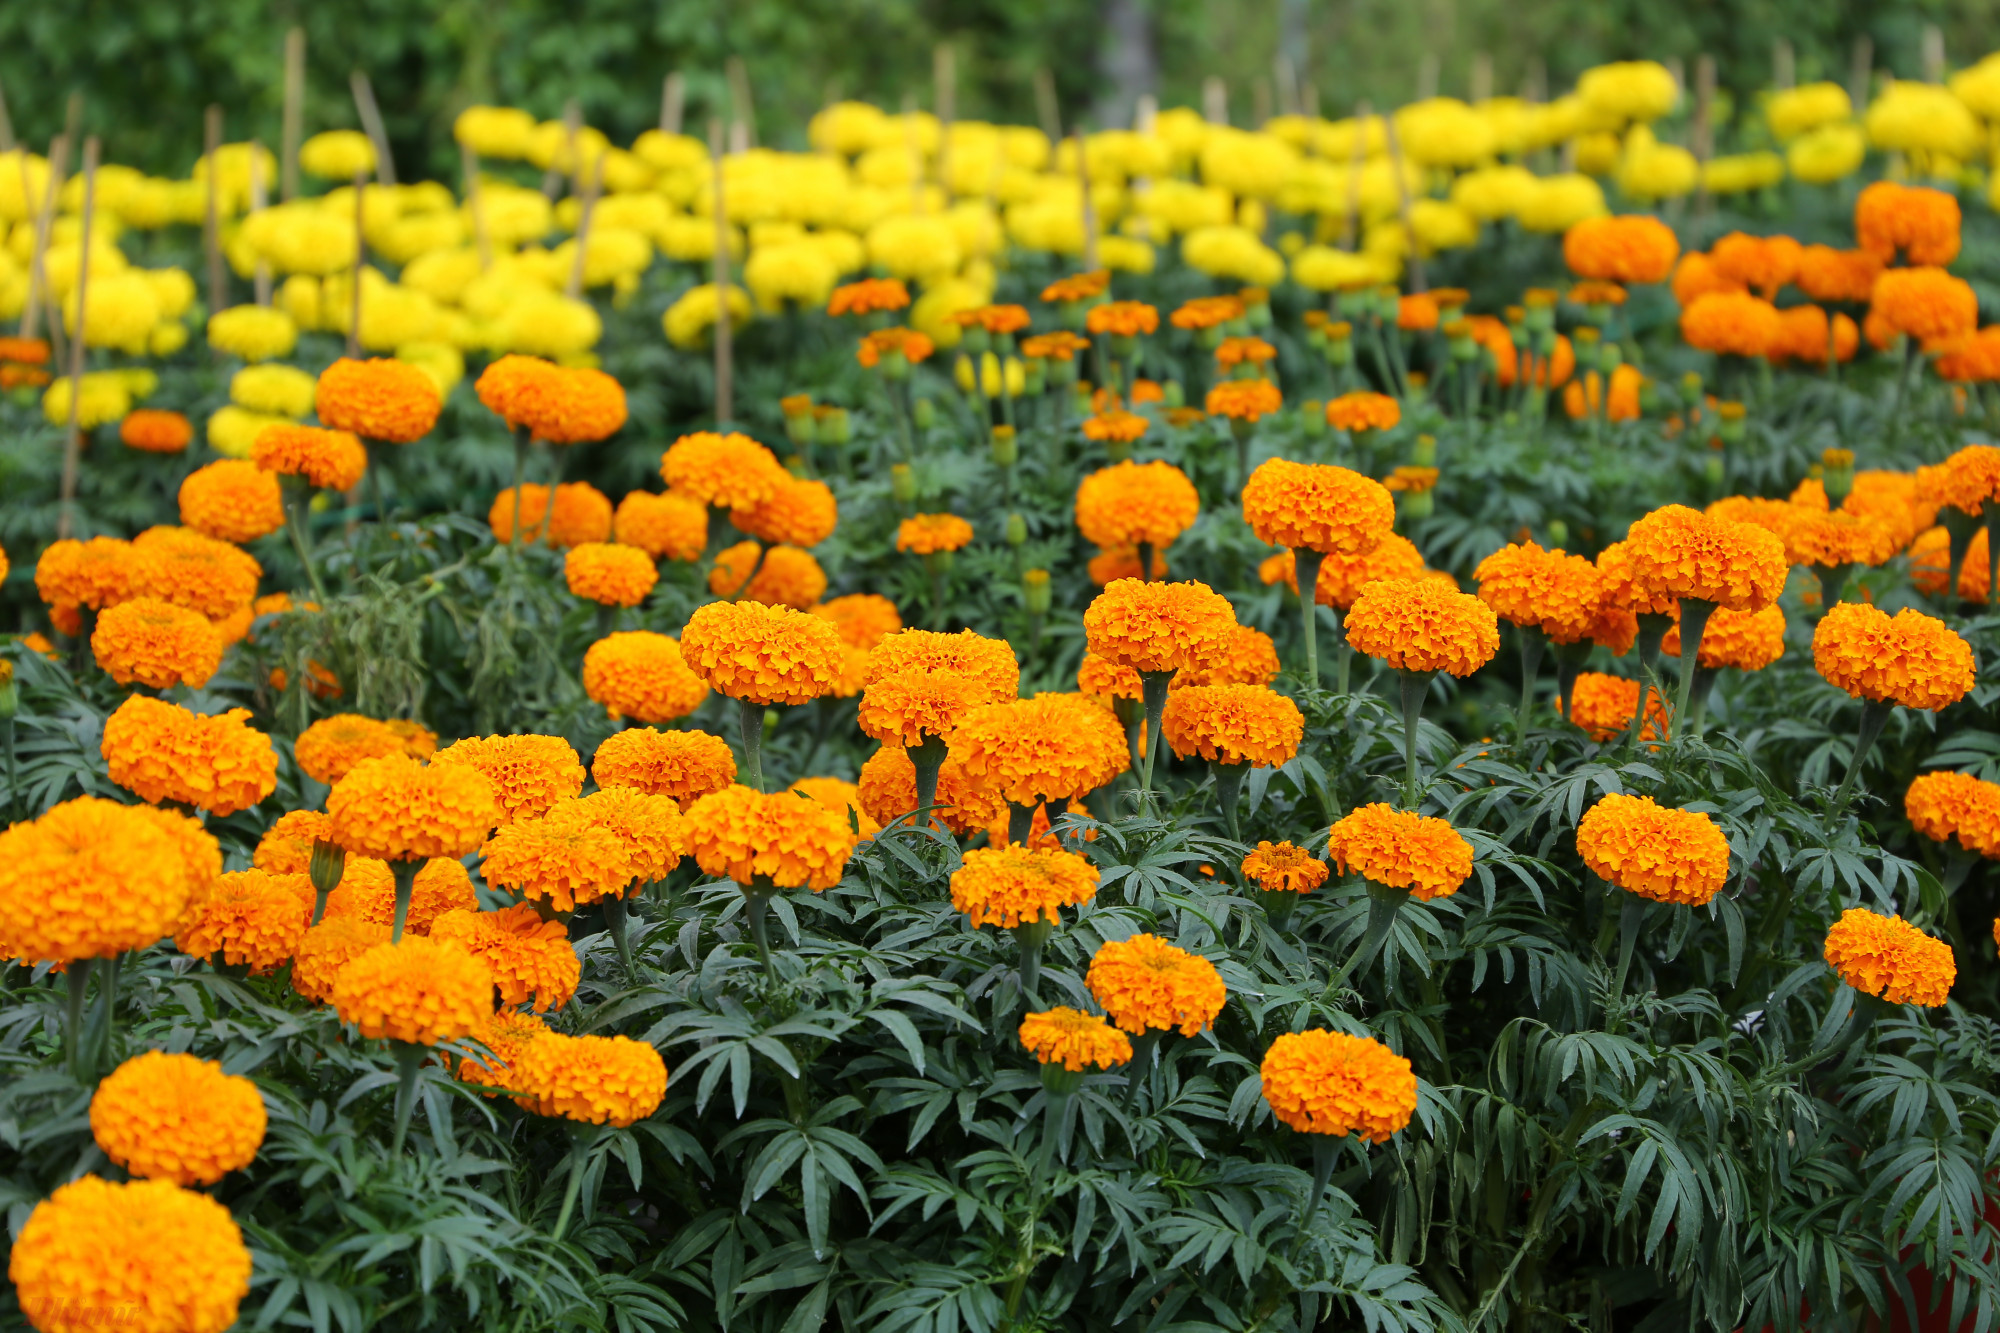 Hoa vạn thọ cũng được ưa chuộng trong ngày Tết. Mỗi hộ đều trồng hàng nghìn chậu vì hoa dễ chăm sóc. Giá hoa được thương lái mua tại vườn là 40.000 đồng/că. Người nông dân có thể lãi khoảng 10.000-15.000 đồng/cặp.